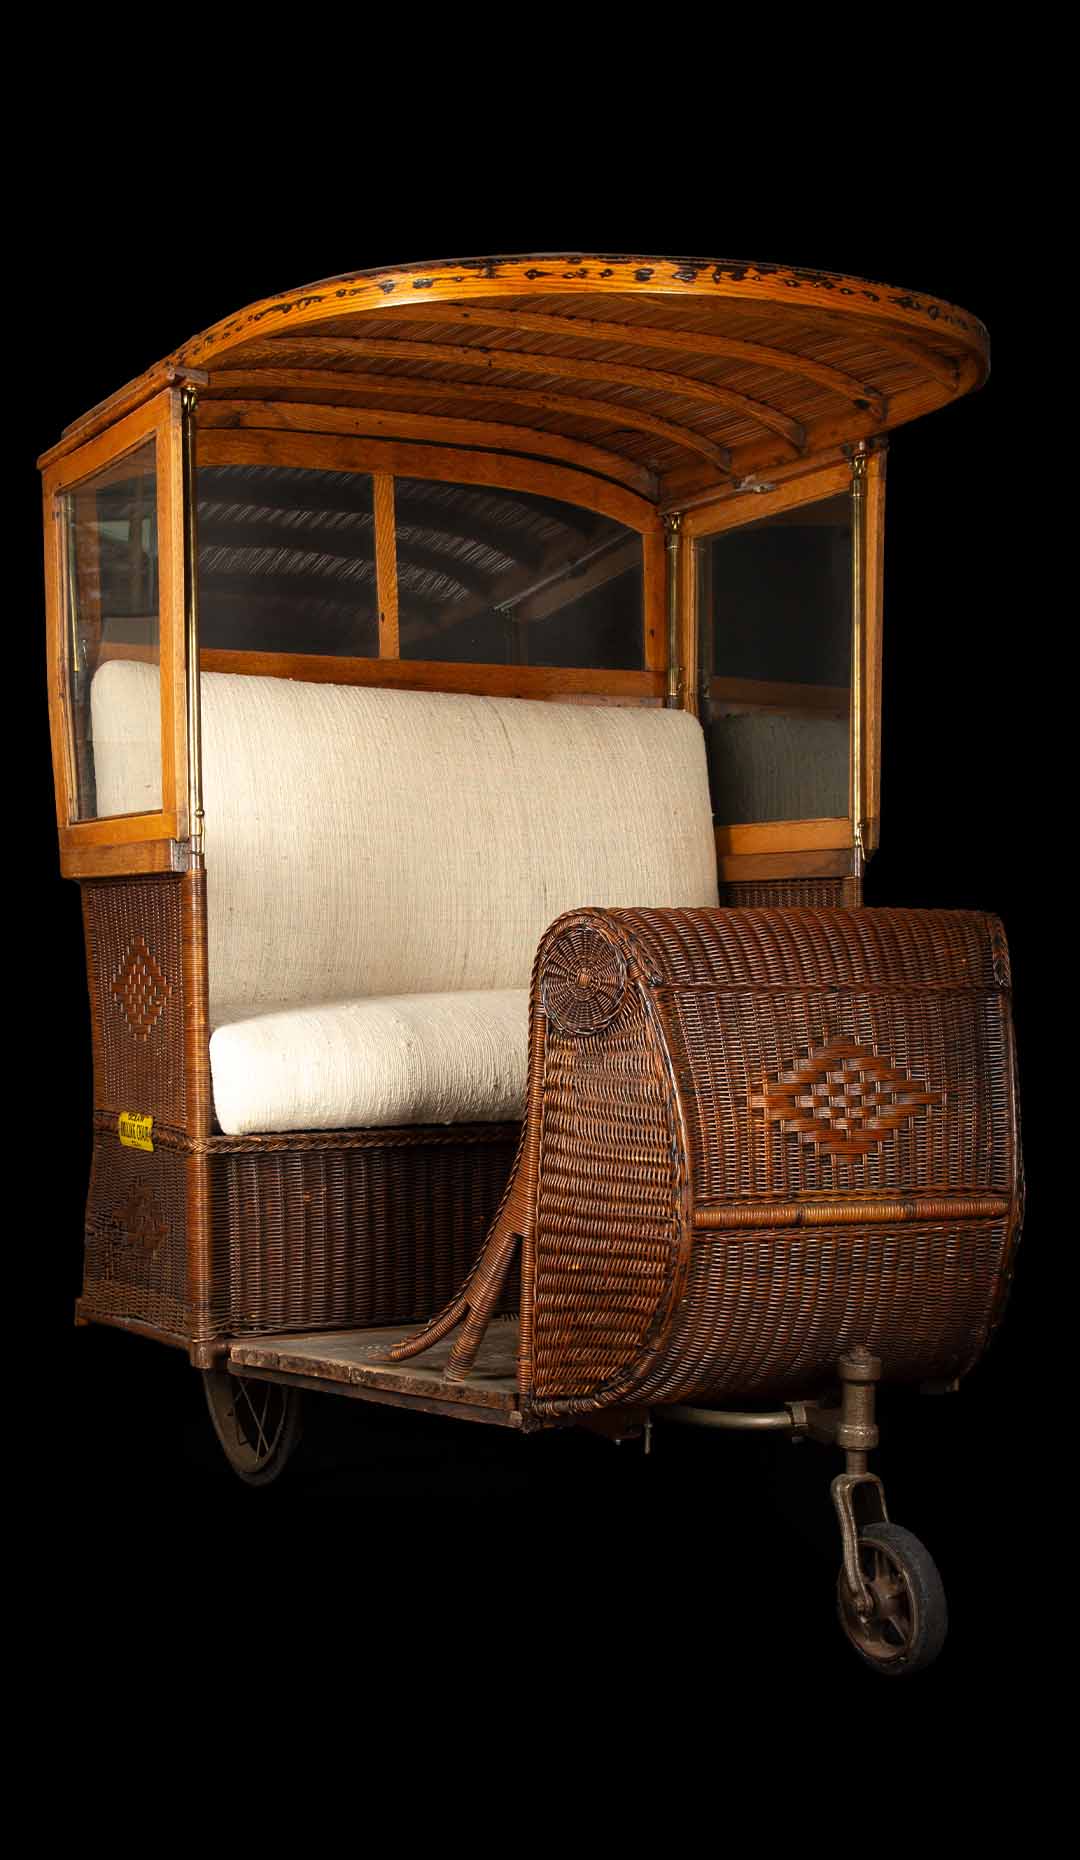 Vintage Ocean Rolling Chair Co. Inc. Boardwalk Cart: A Timeless Seaside Treasure